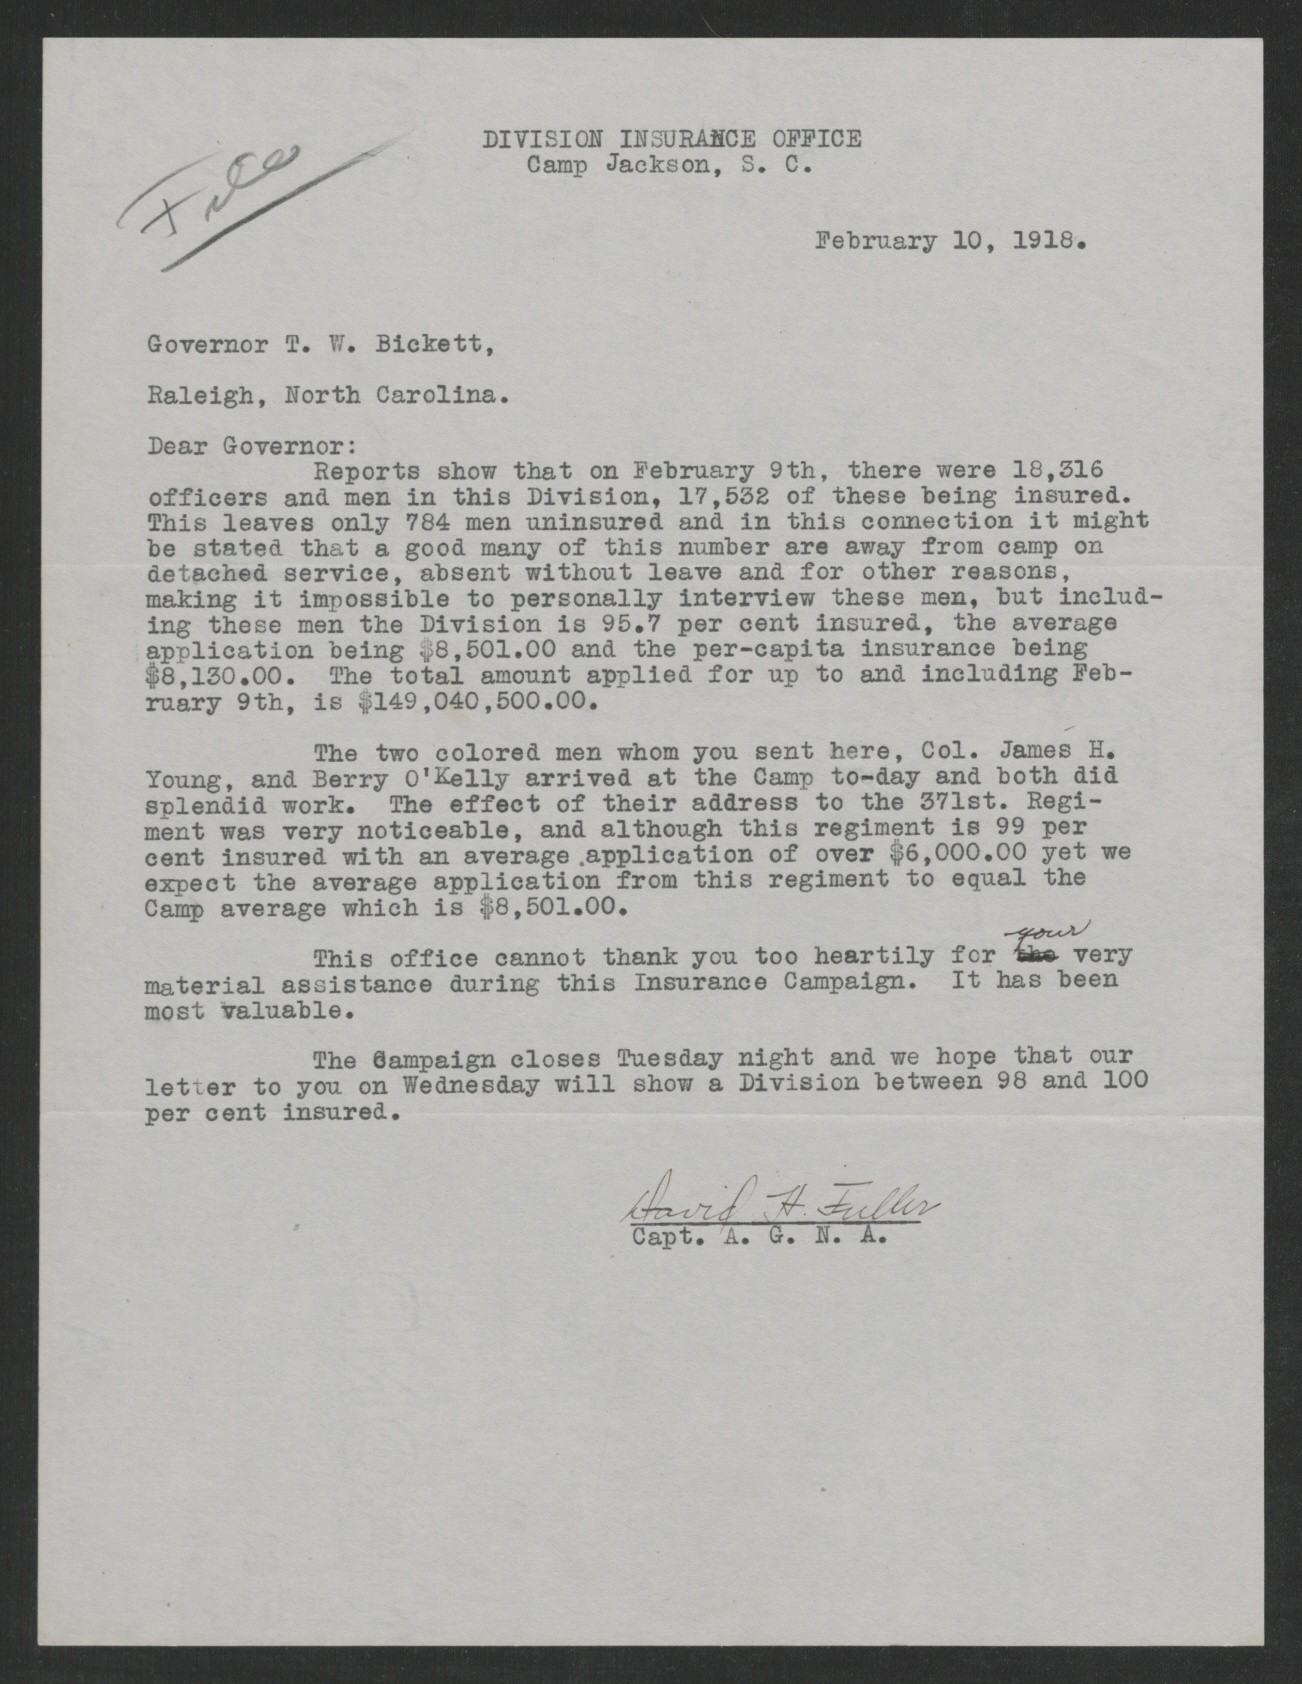 Letter from David H. Fuller to Gov. Bickett, February 10, 1918